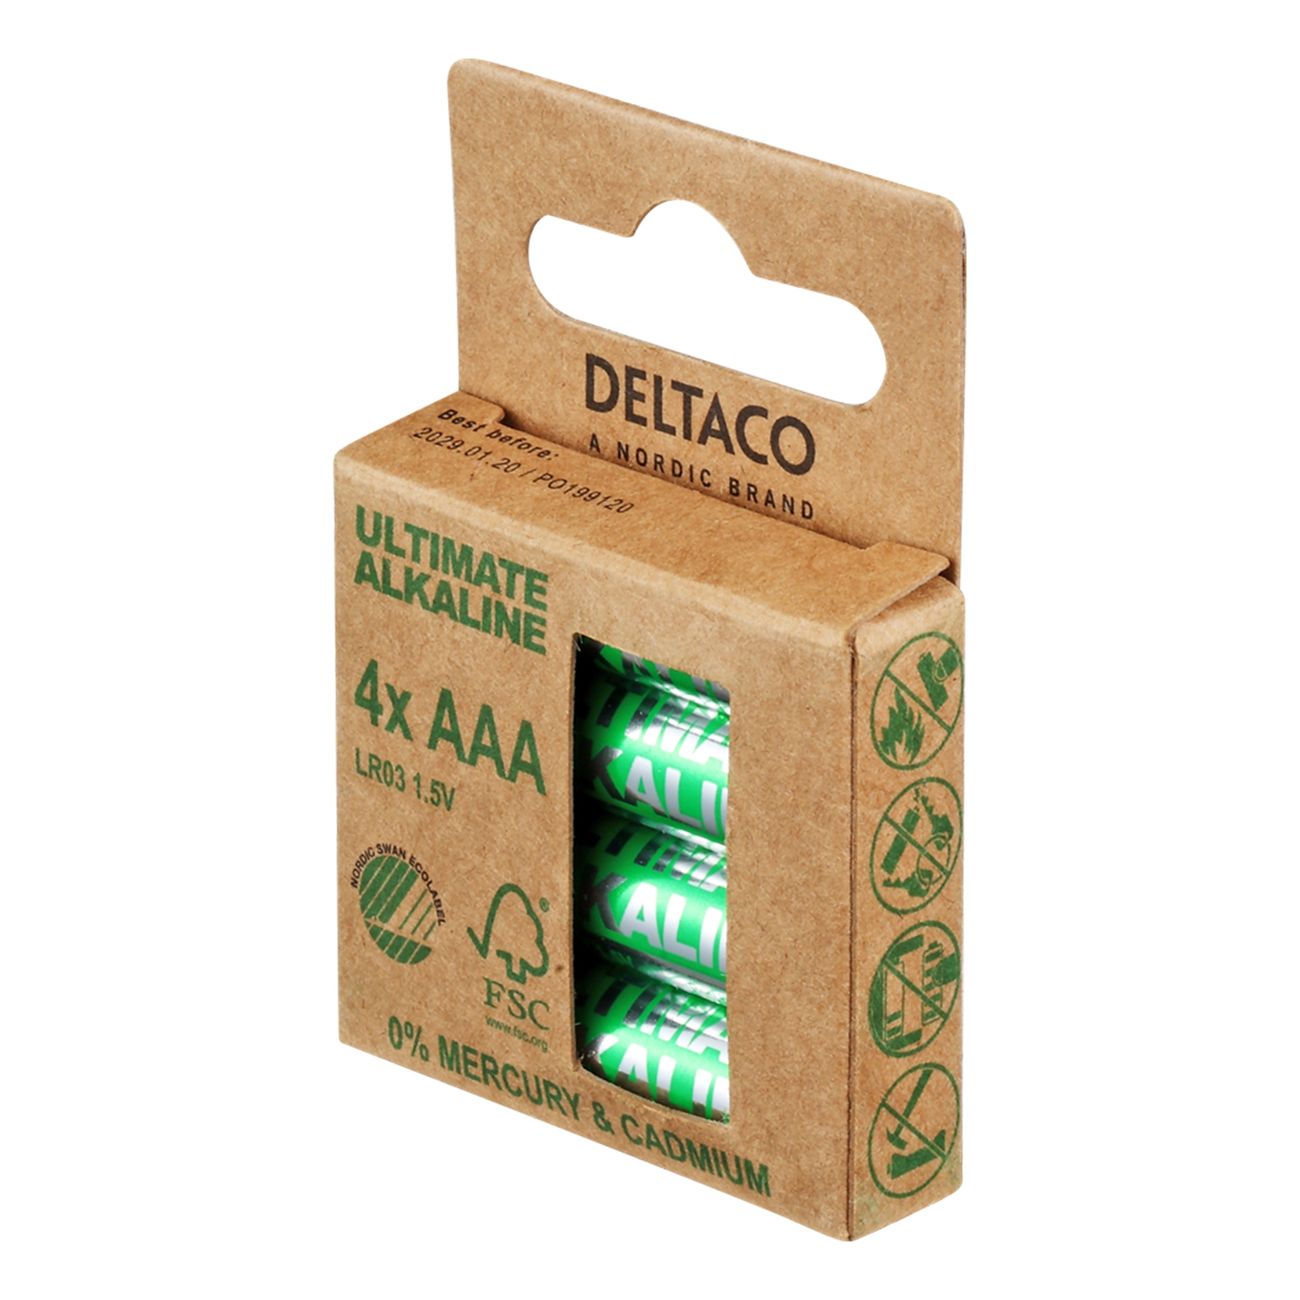 deltaco-ultimate-alkaline-batterier-91181-10